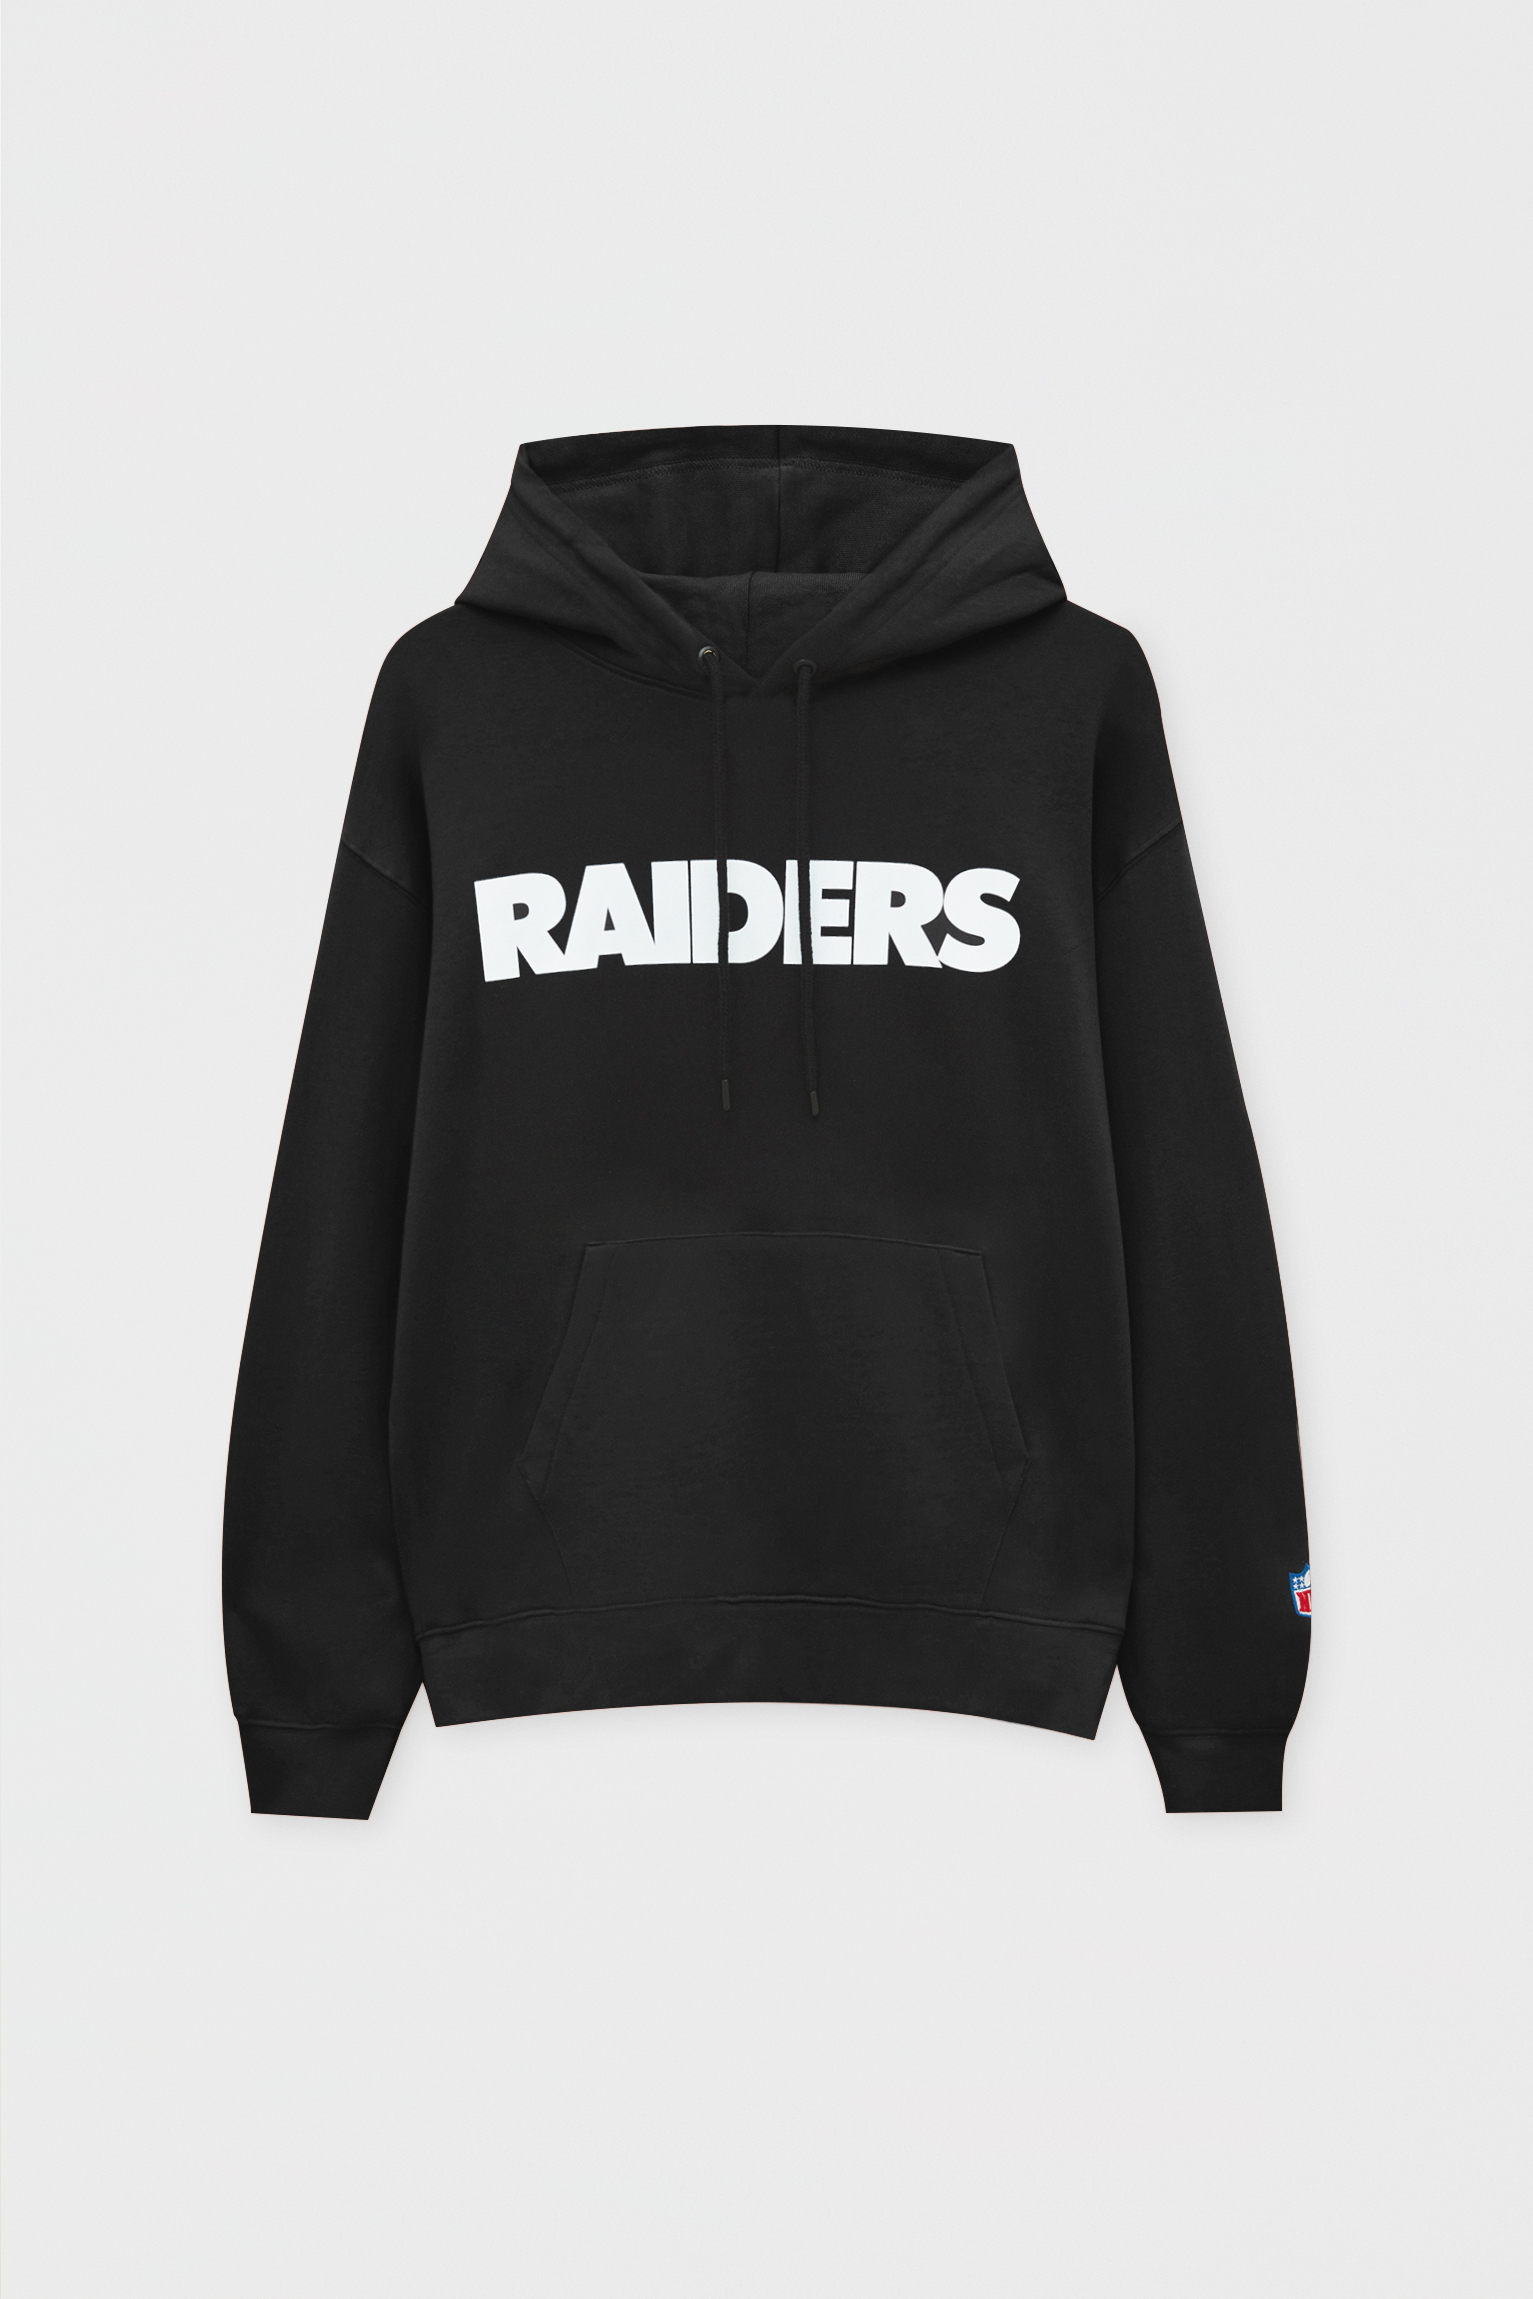 white raiders sweatshirt